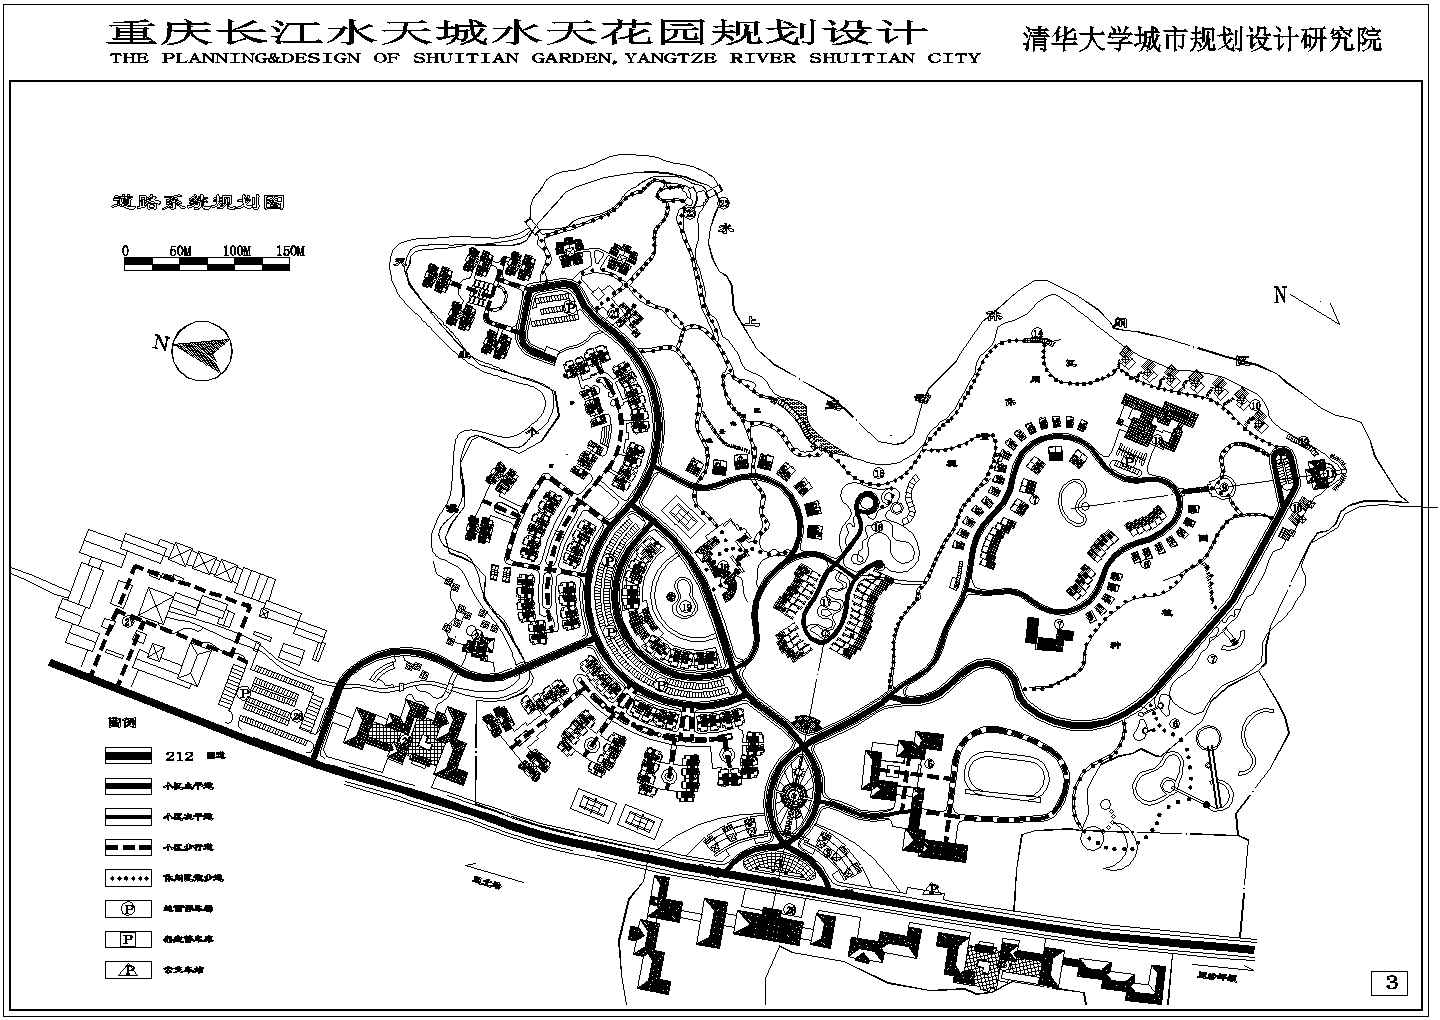 重庆长江水天城水天花园规划设计